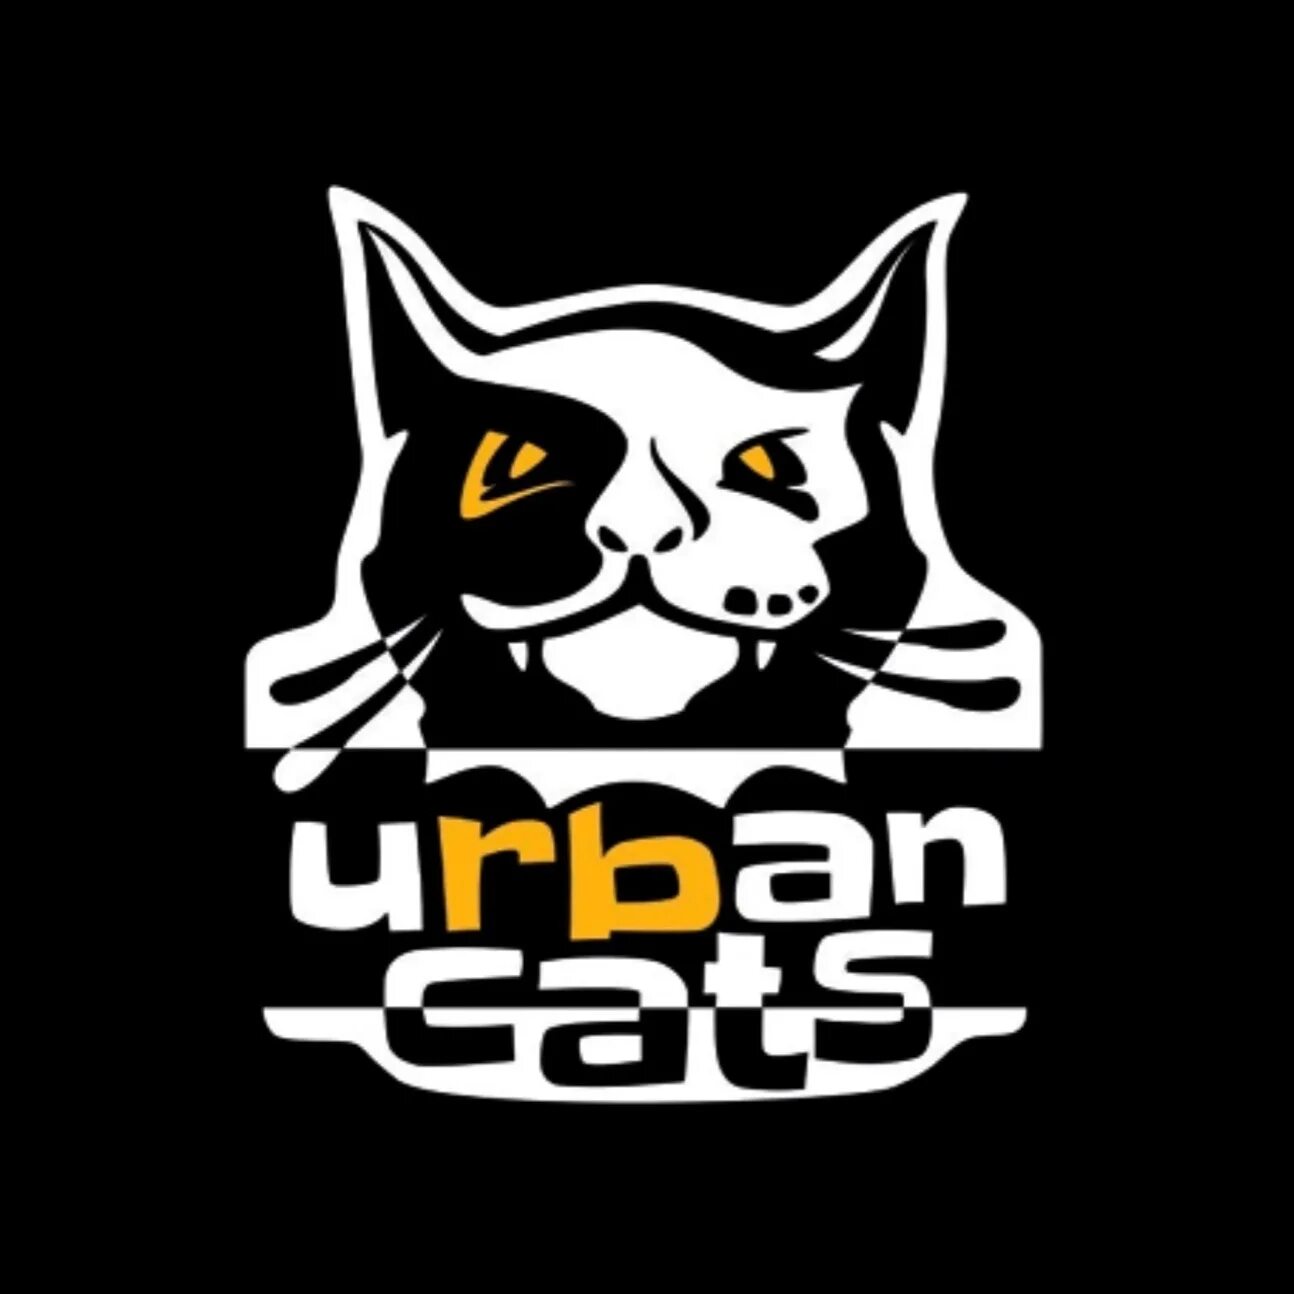 Войти кэт. Urban Cats роллершкола. Городские коты роллер школа. Роллердром Urban Cats. Роллер клуб Urban Cat.